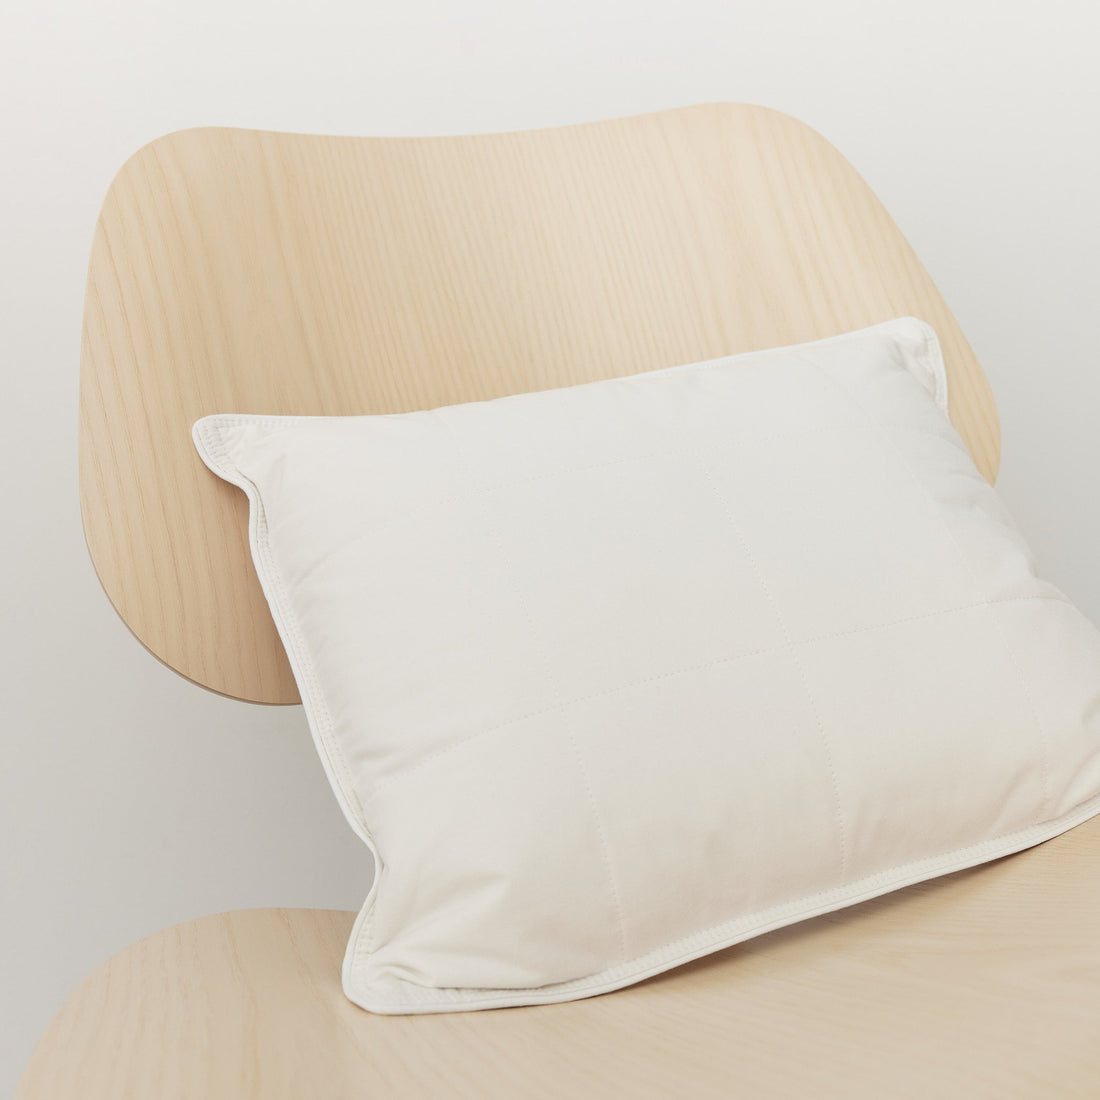 SmartSilk lumbar support pillow on oak chair